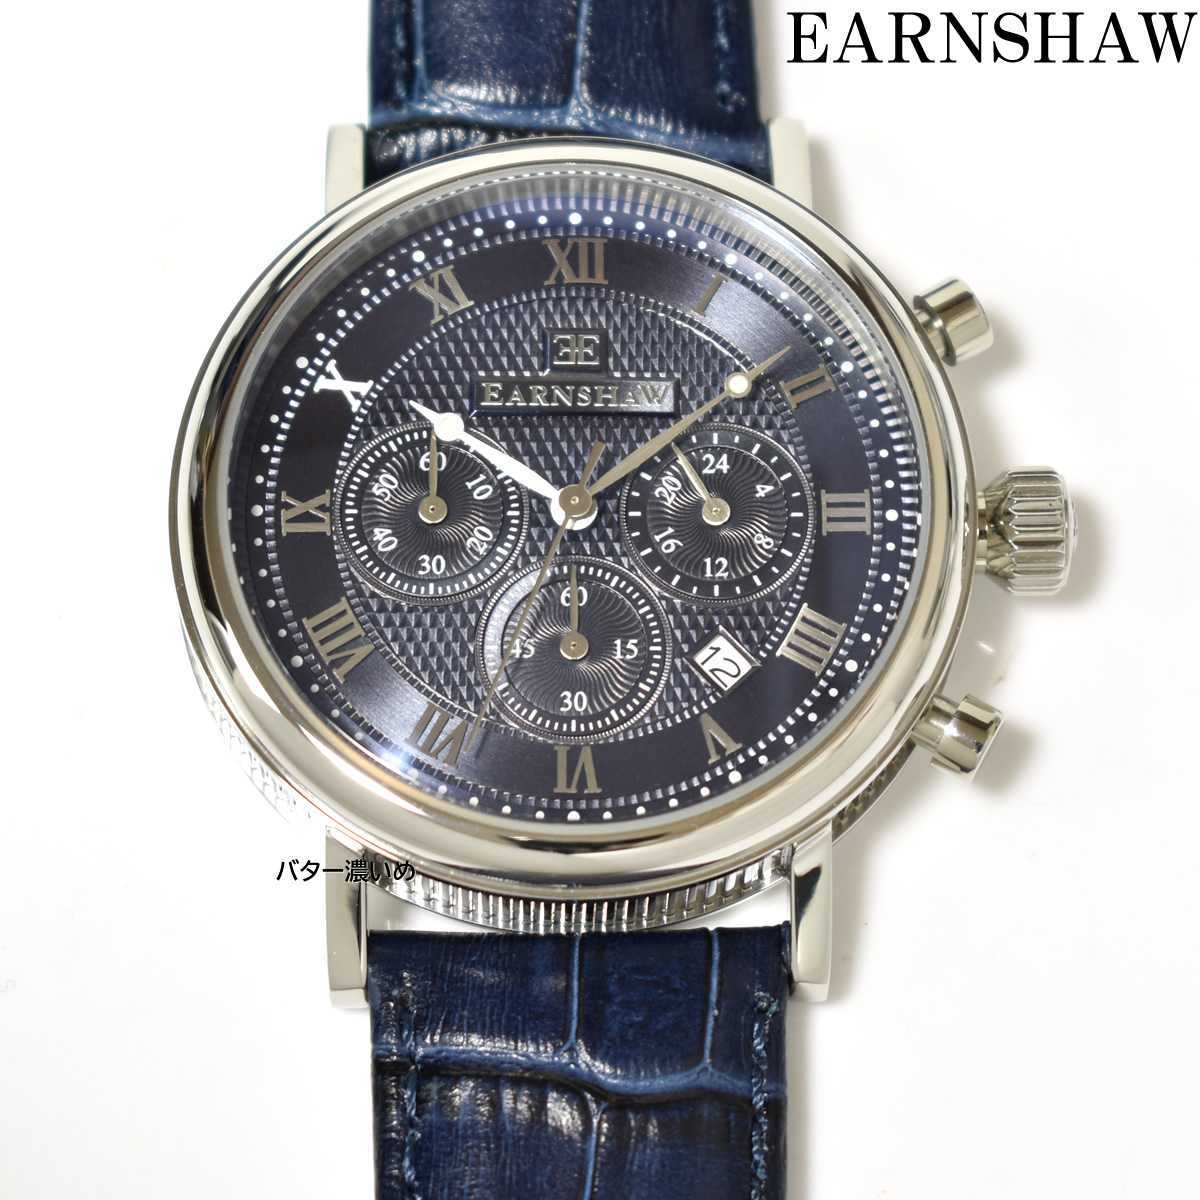 新品 EARNSHAW アーンショウ 腕時計 メンズ クロノグラフ クオーツ 革